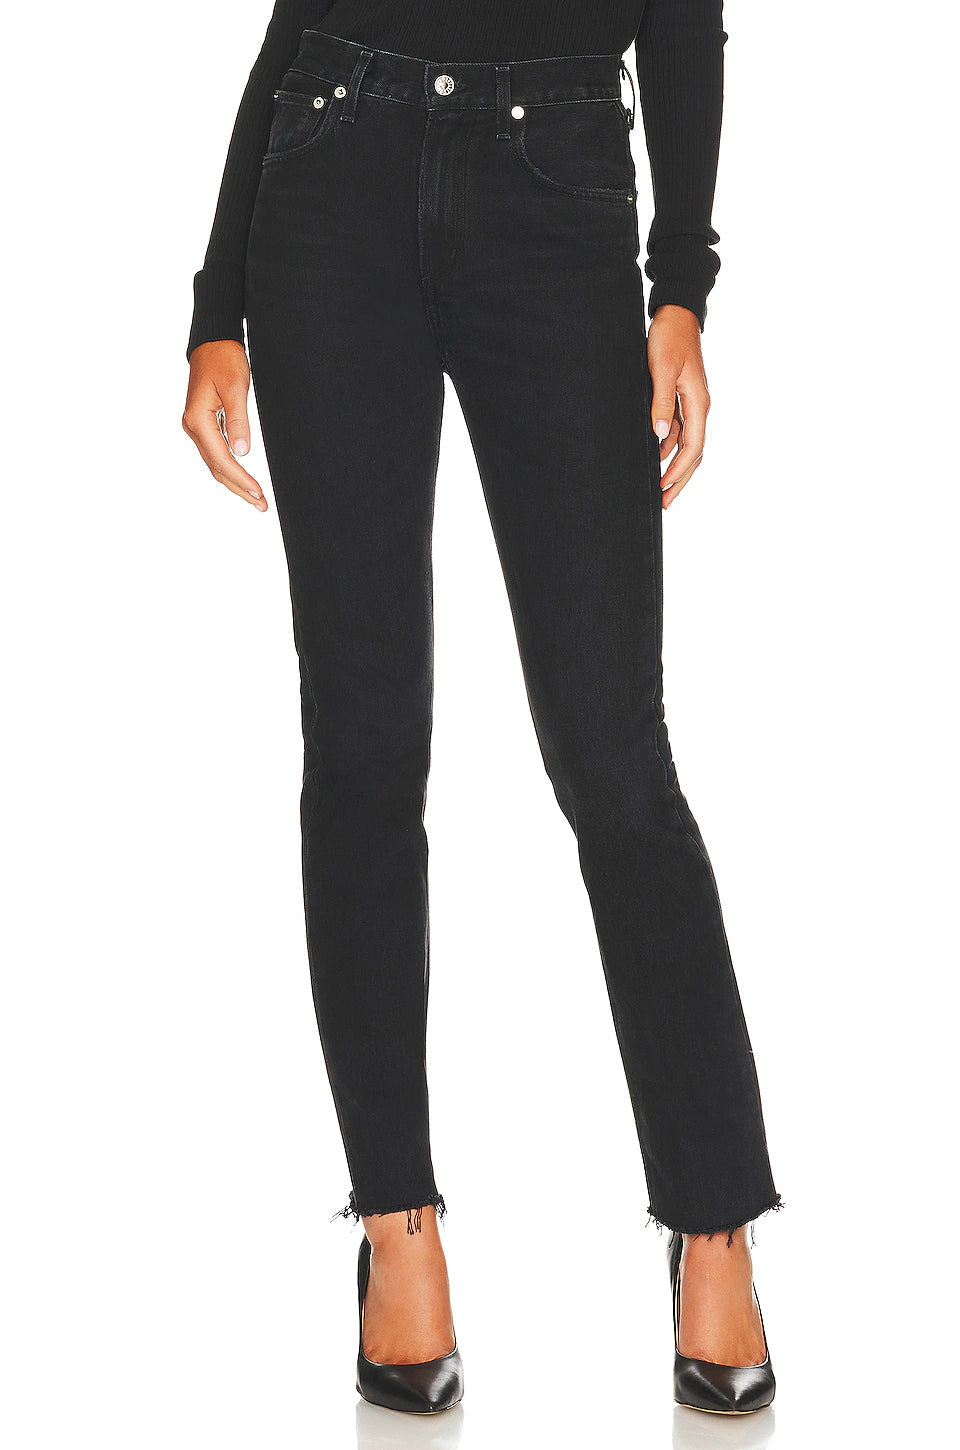 AGOLDE - Cherie Spat Pants & Jeans AGOLDE Black 24 